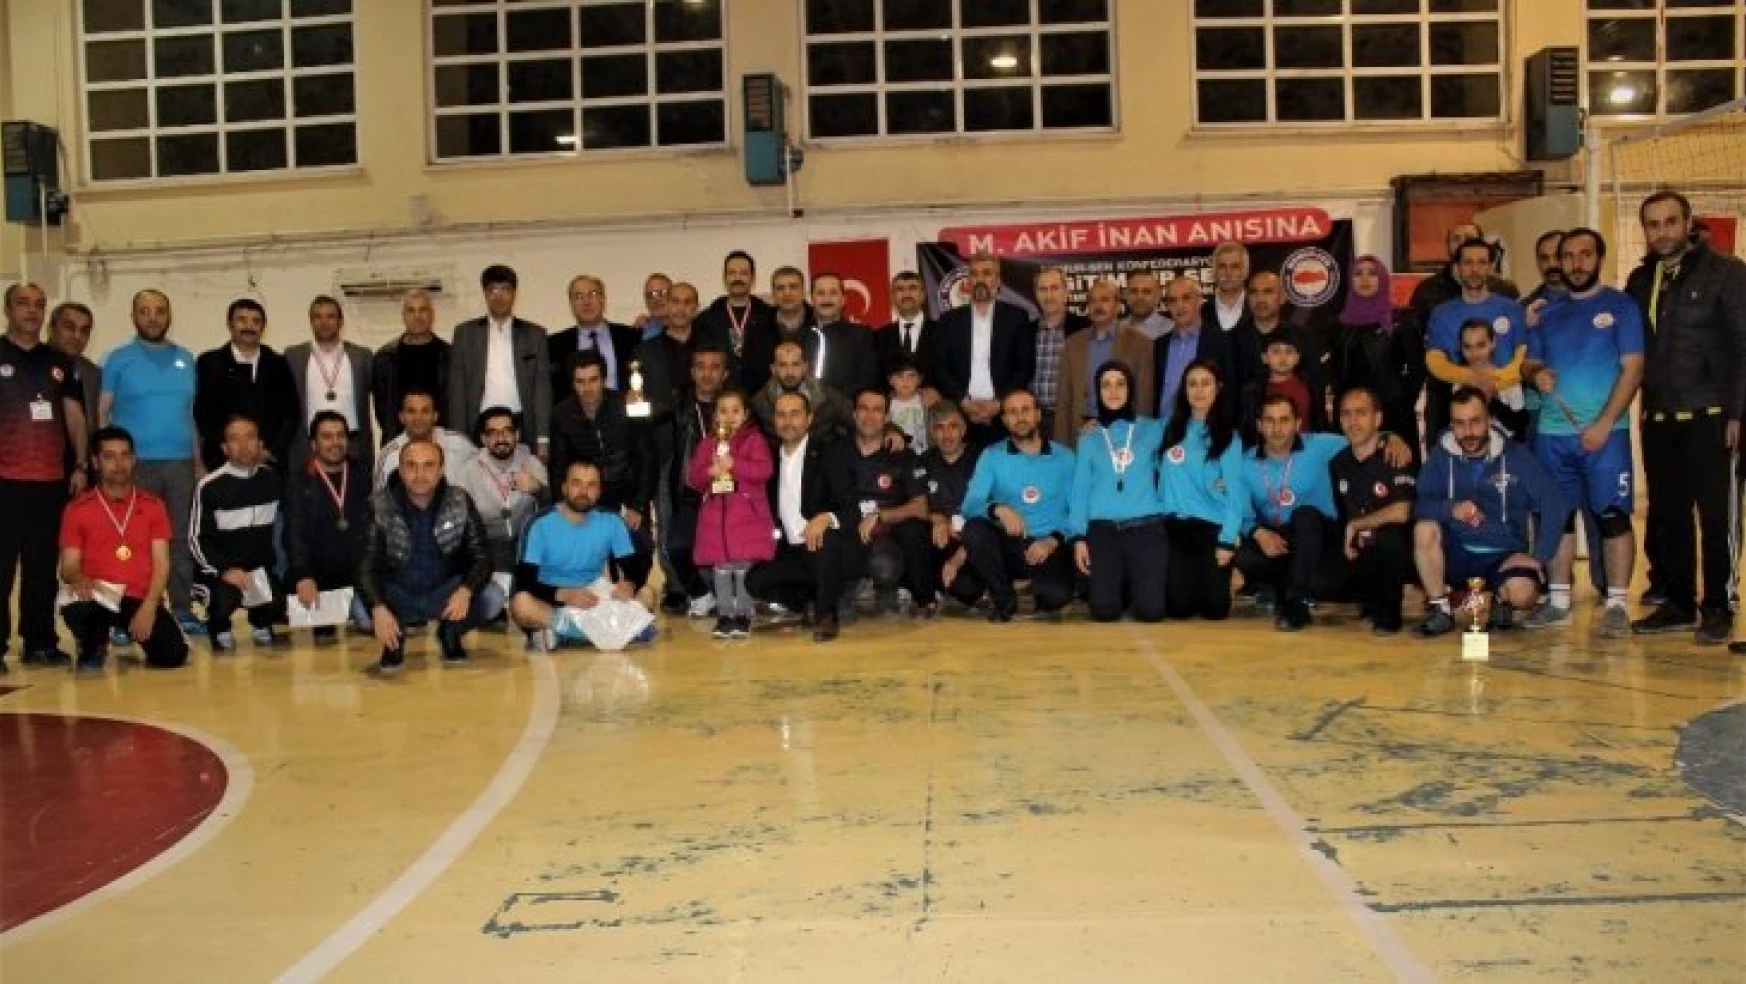 Şair Mehmet Akif İnan'ın Anısına Düzenlenen Turnuva Sona Erdi